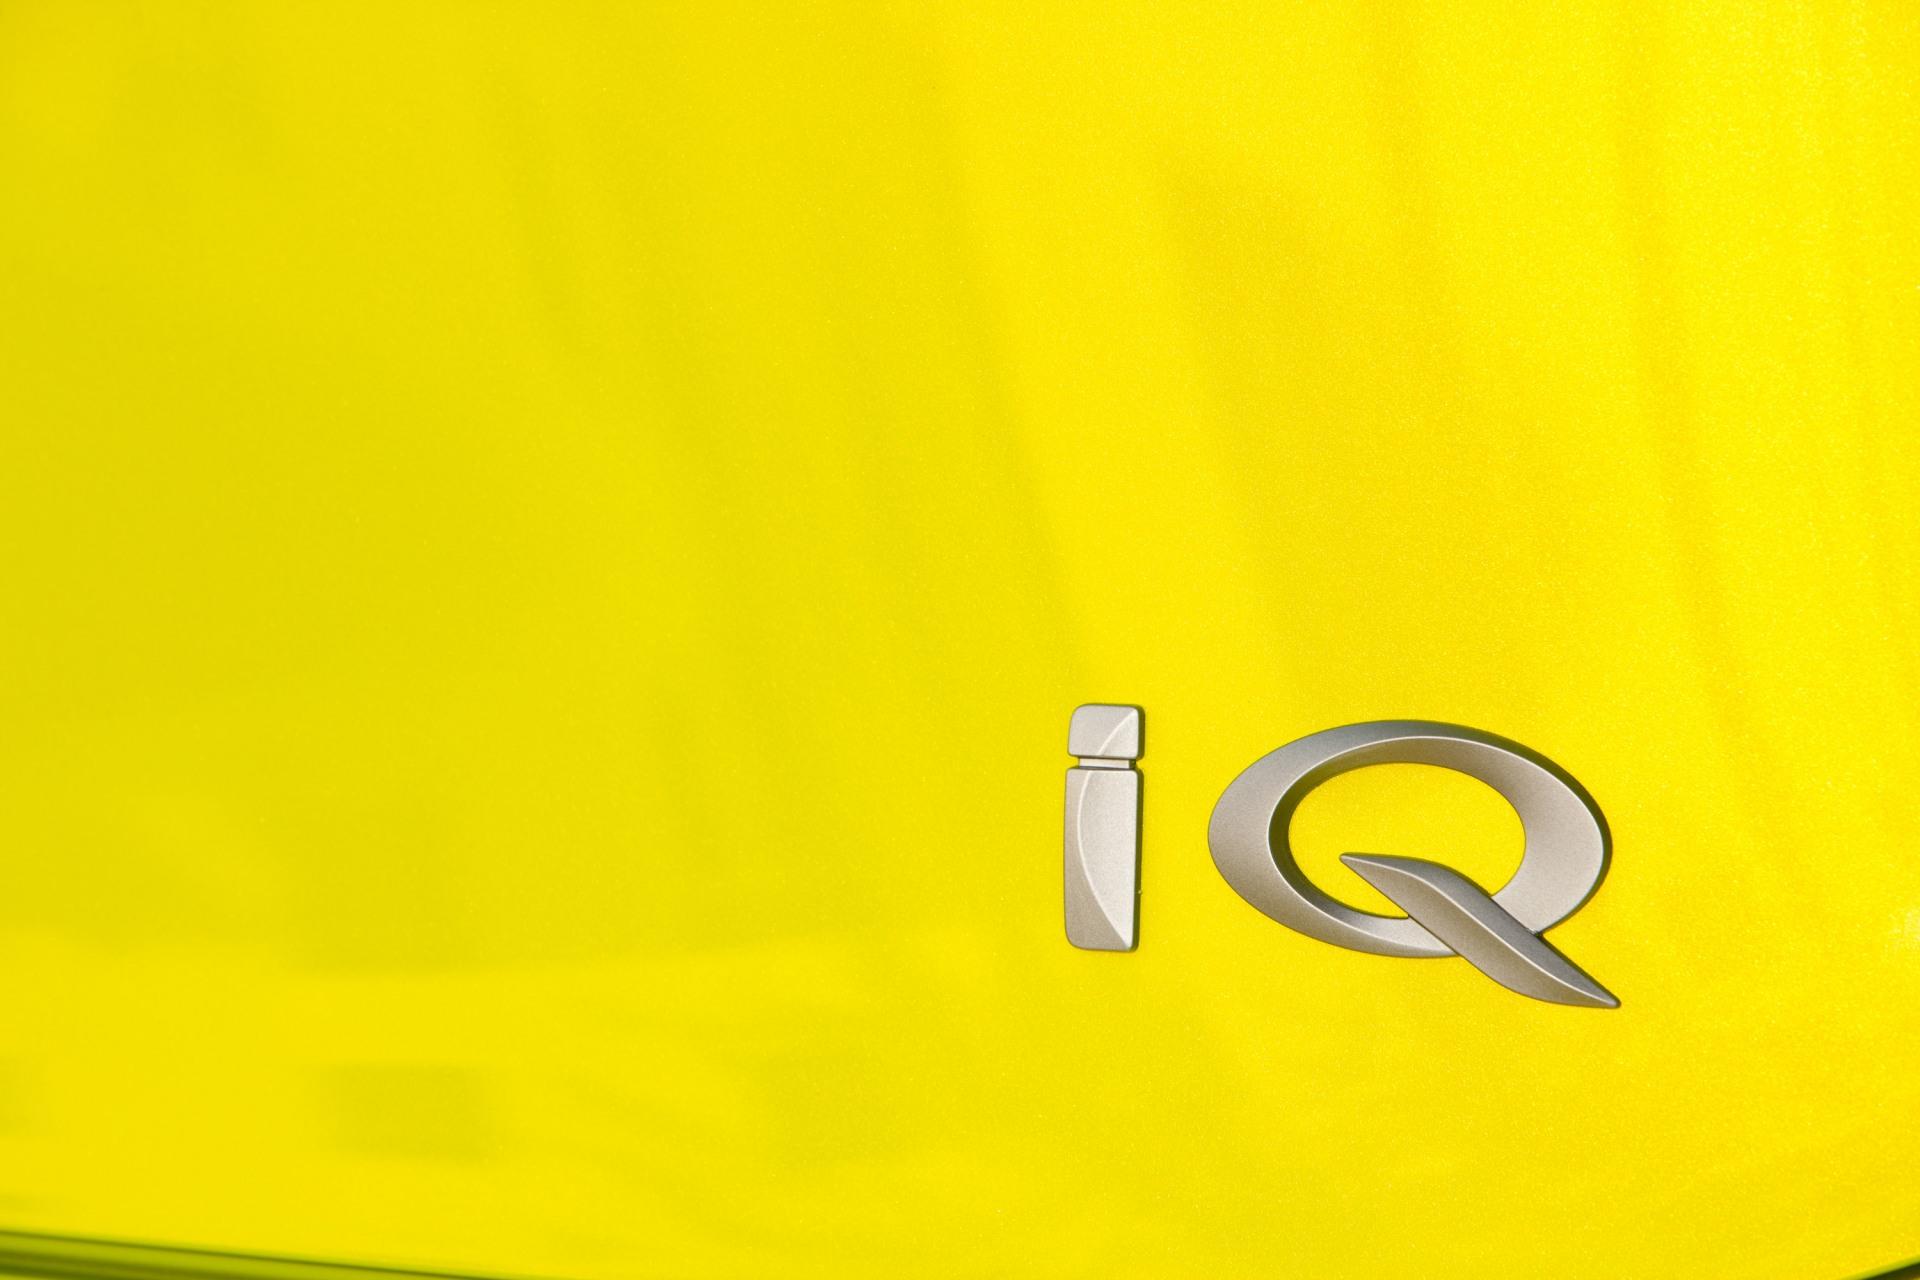 2009 Scion iQ Concept